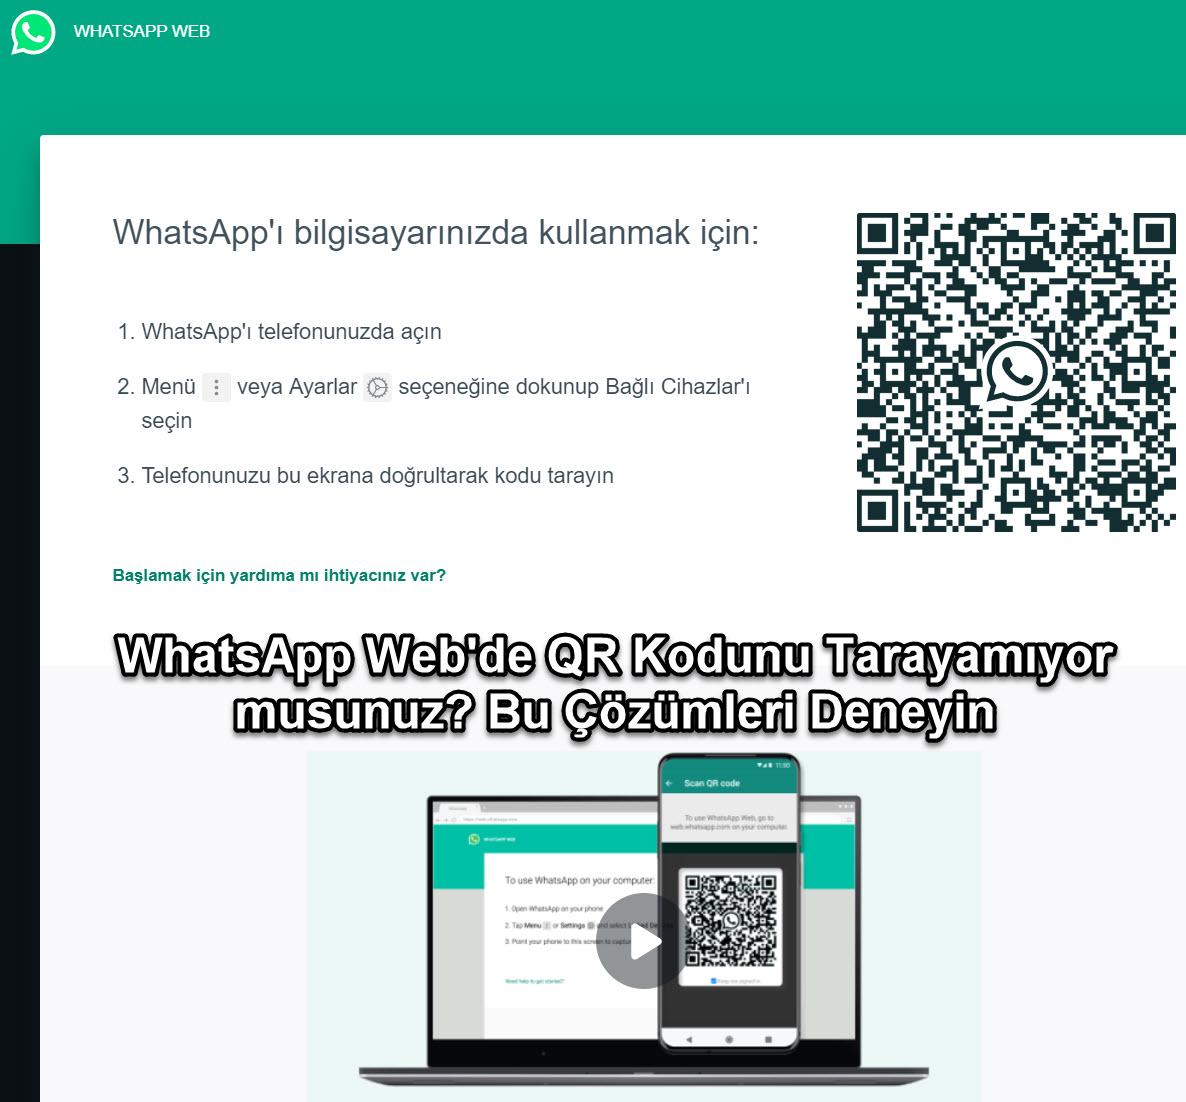 Whatsapp Webde Qr Kodunu Taraamiyor Musunuz Bu Cozumleri Deneyin 1 5